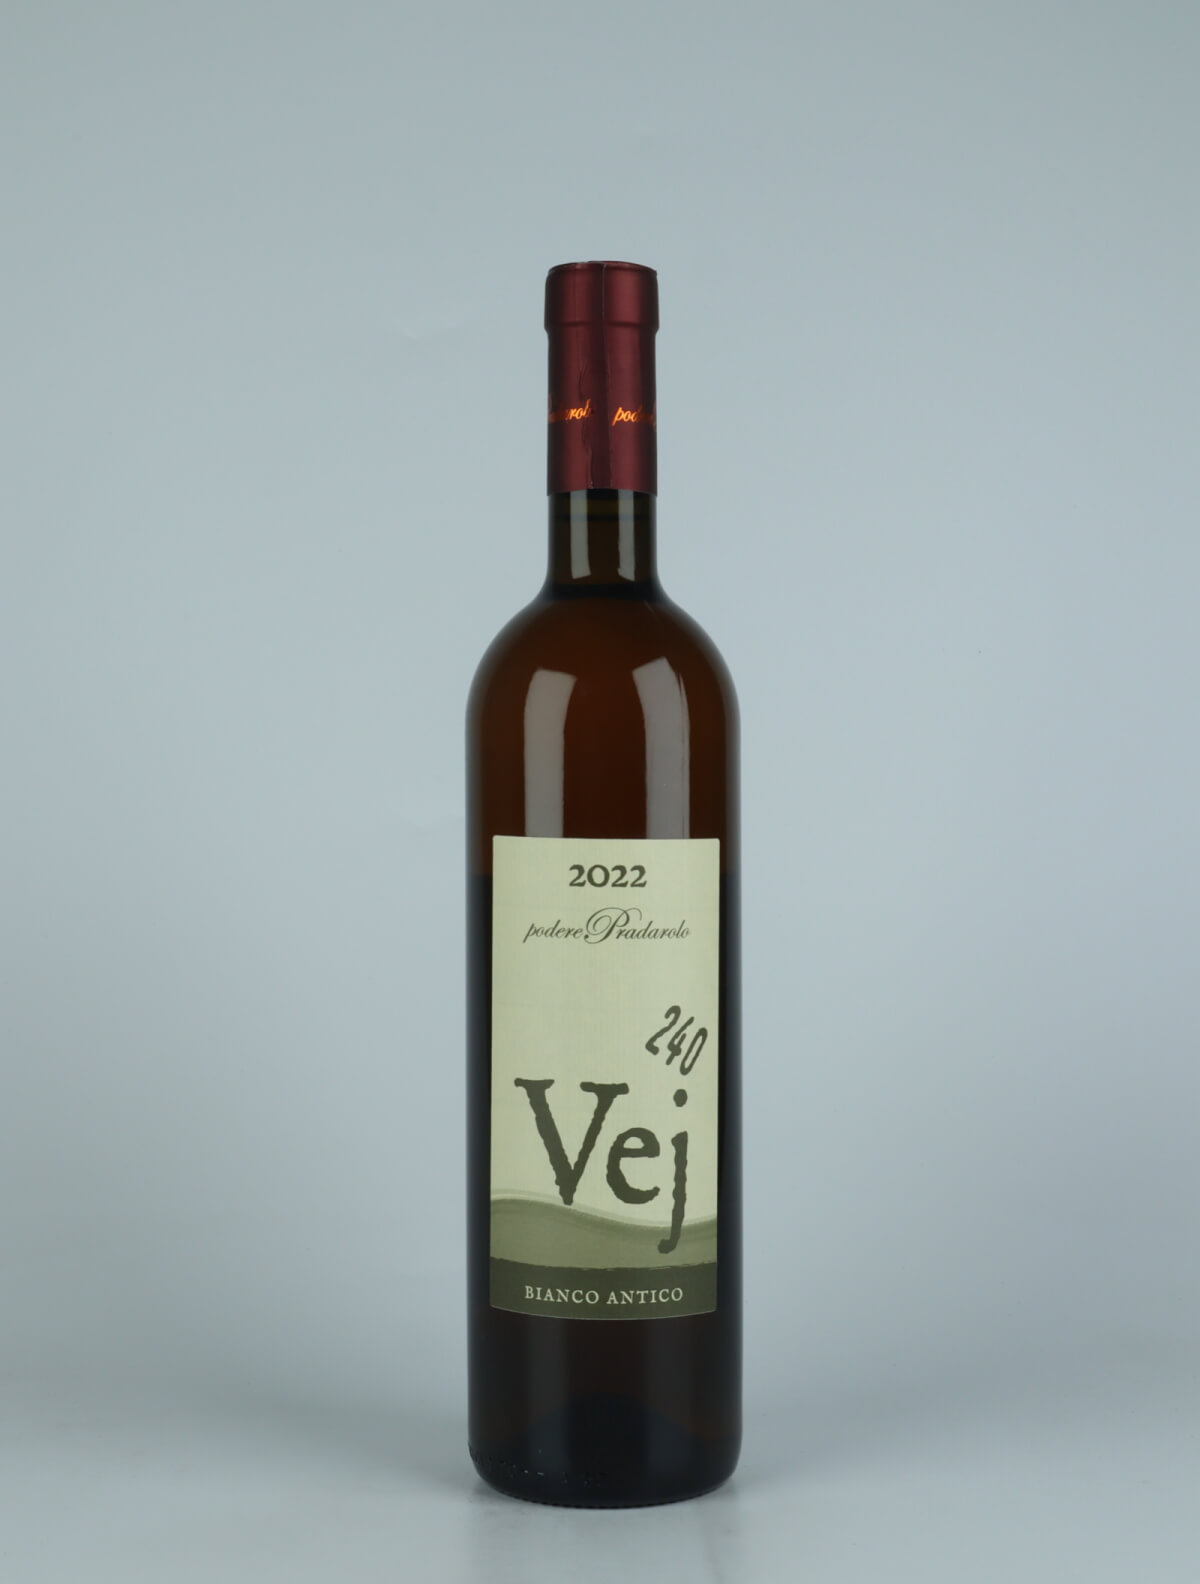 A bottle 2022 Vej 240 - Bianco Antico Orange wine from Podere Pradarolo, Emilia-Romagna in Italy